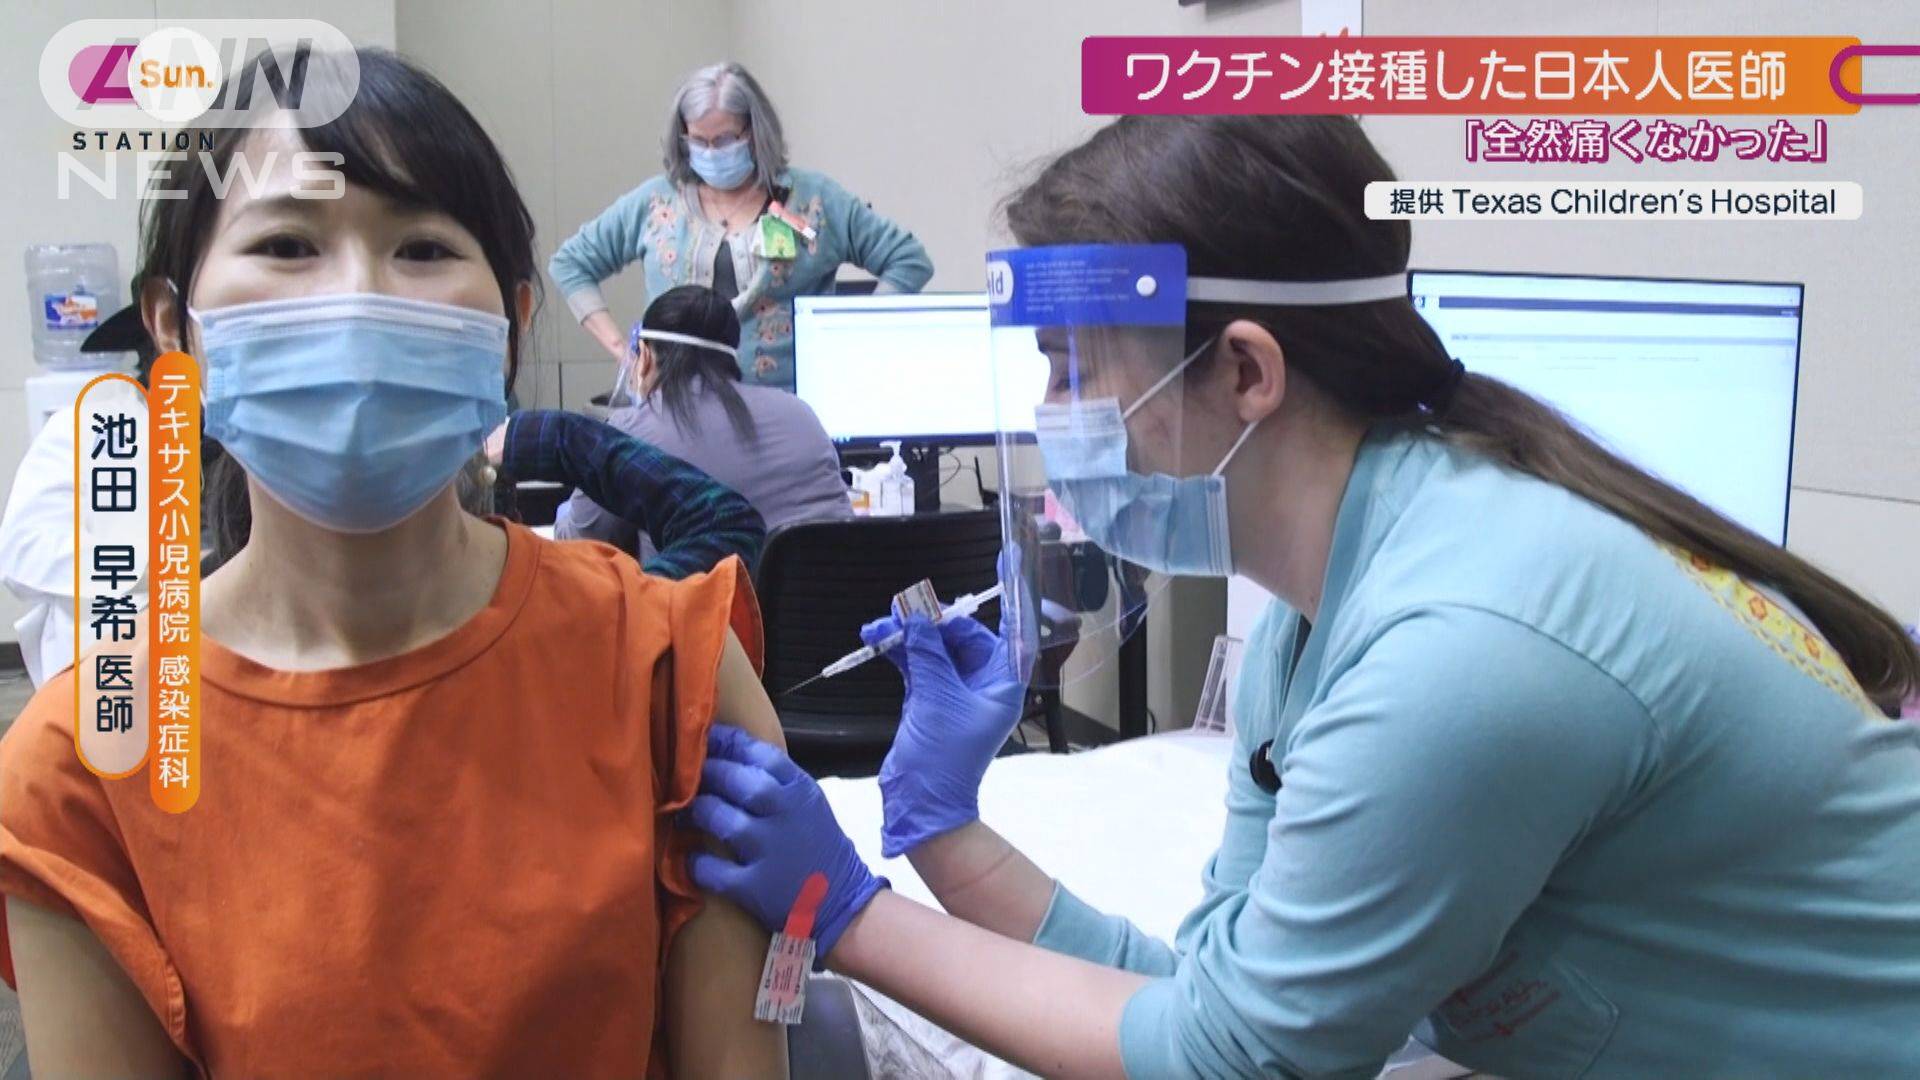 アメリカで 希望のワクチン 接種した日本人医師 テレ朝news テレビ朝日のニュースサイト